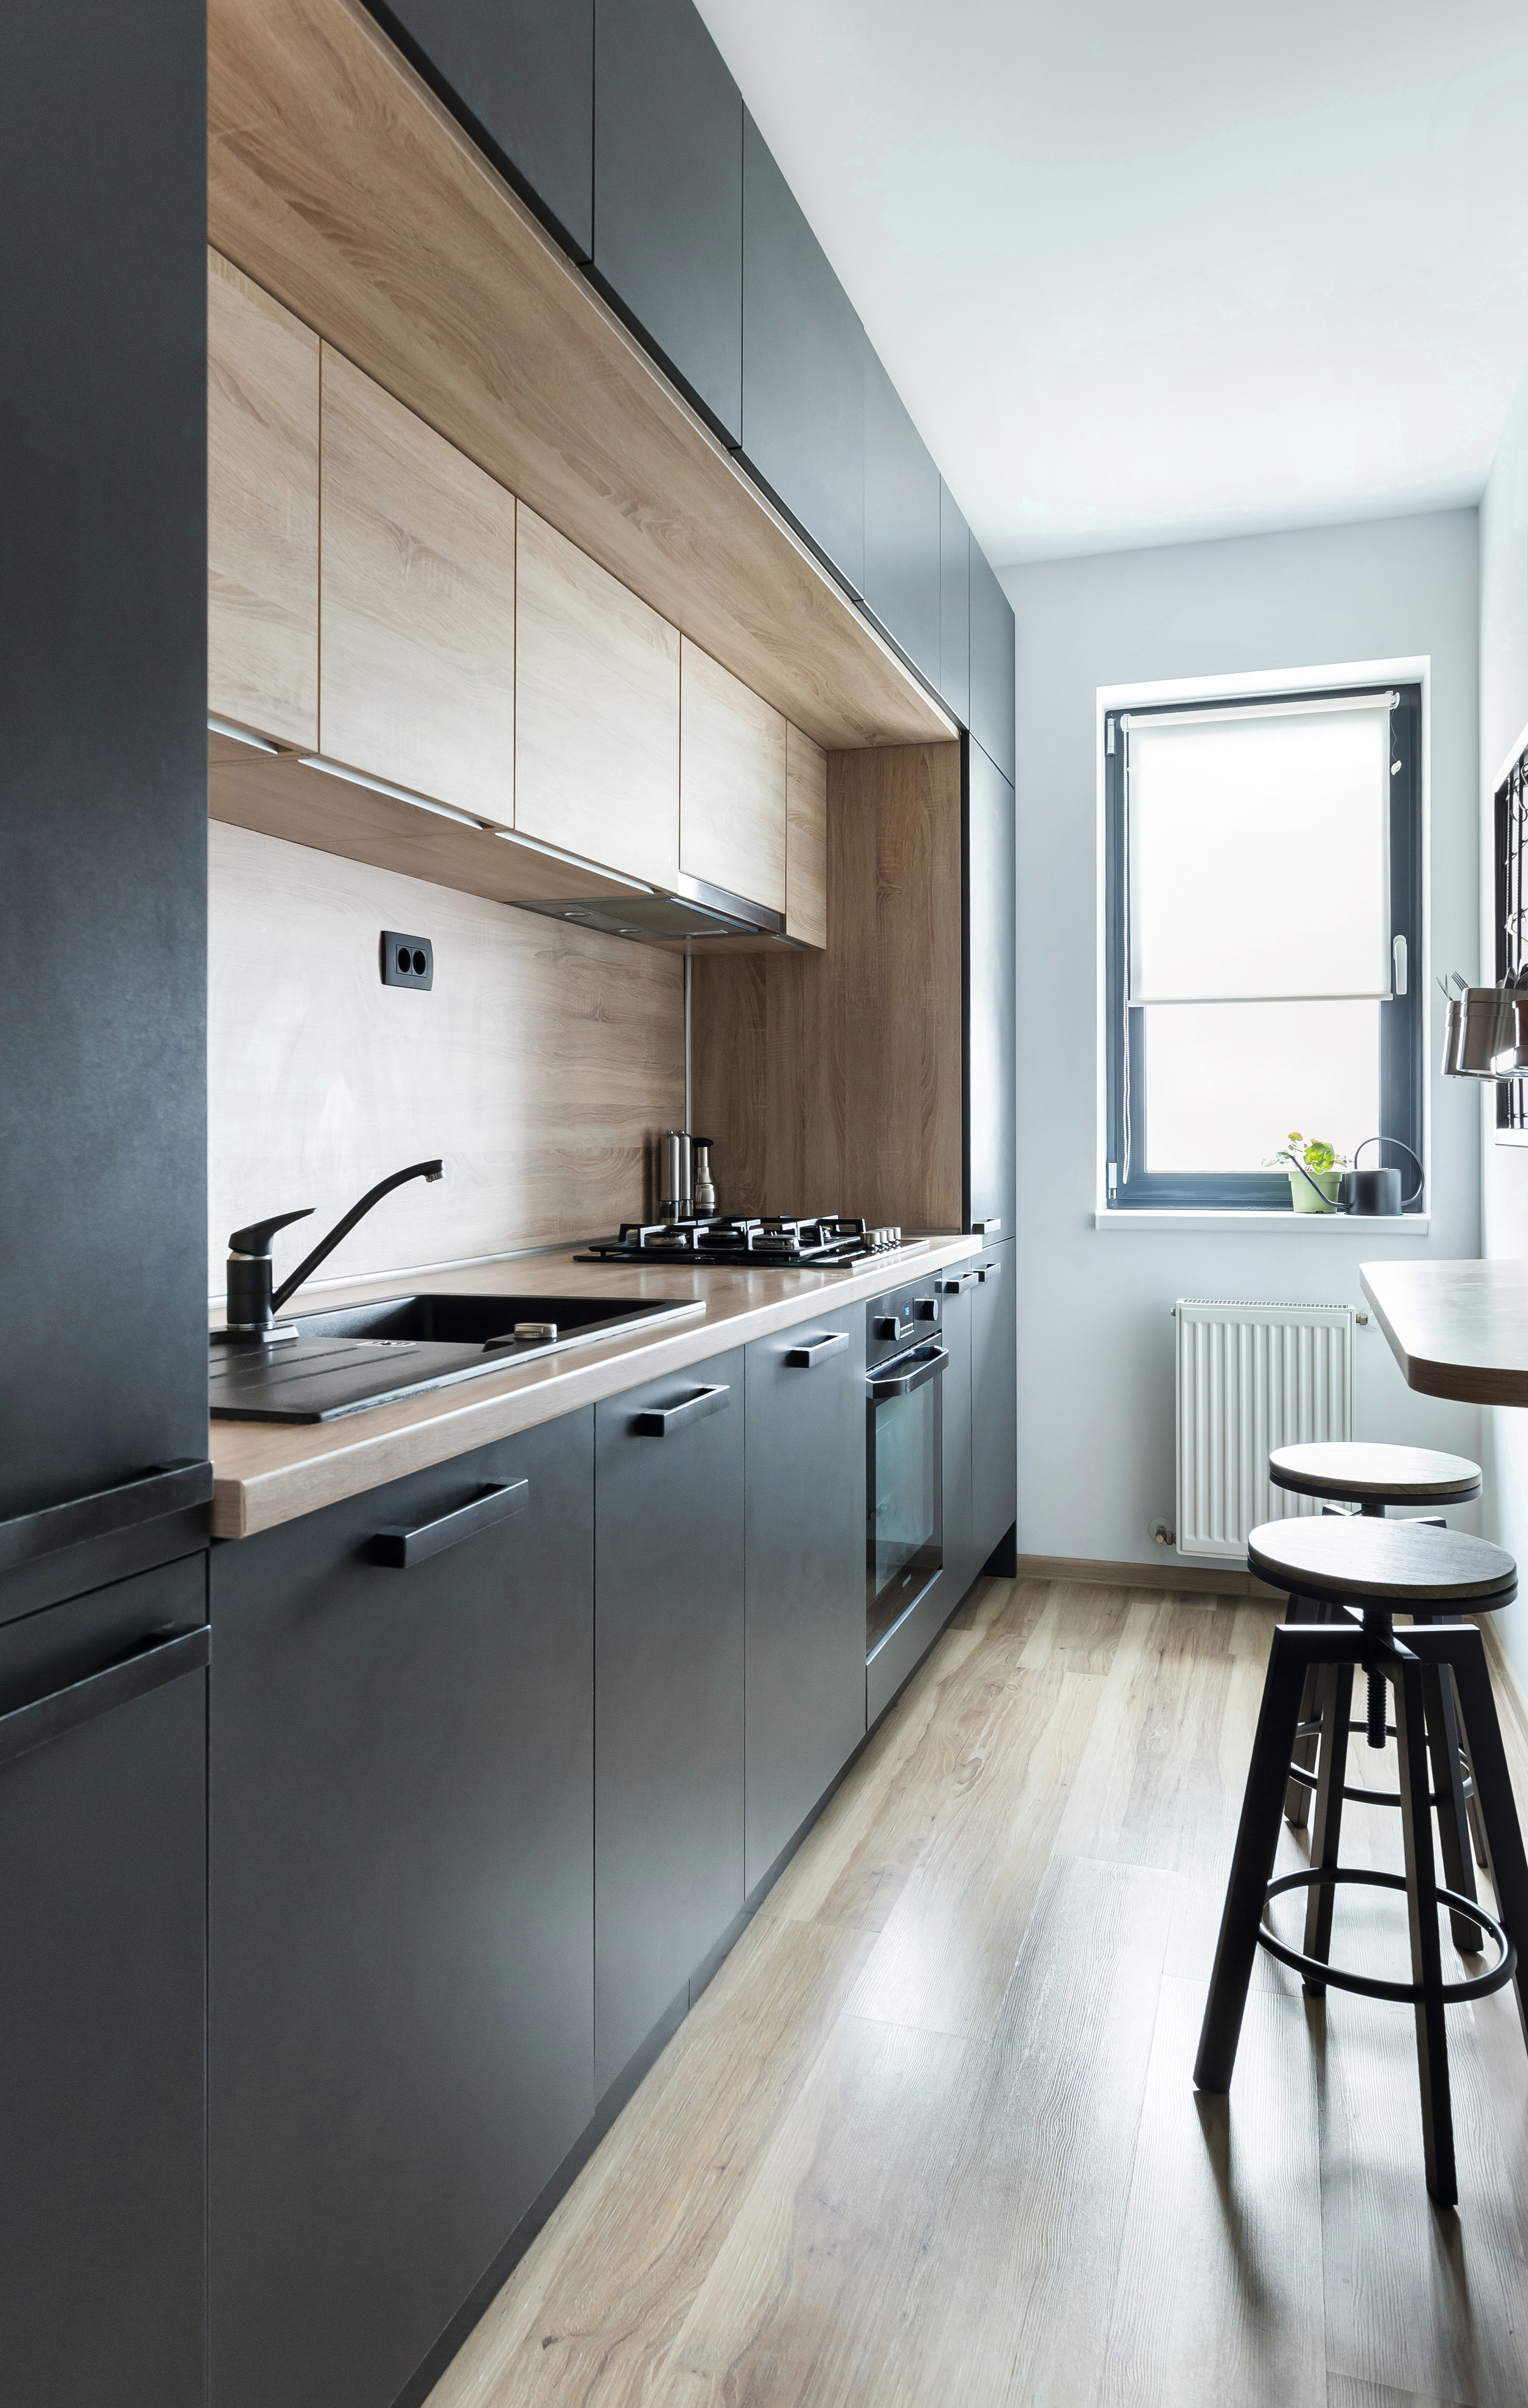 Doğru renk seçimi ve geometrik düzenleme ile modern bir mutfak görünümü elde ediliyor.